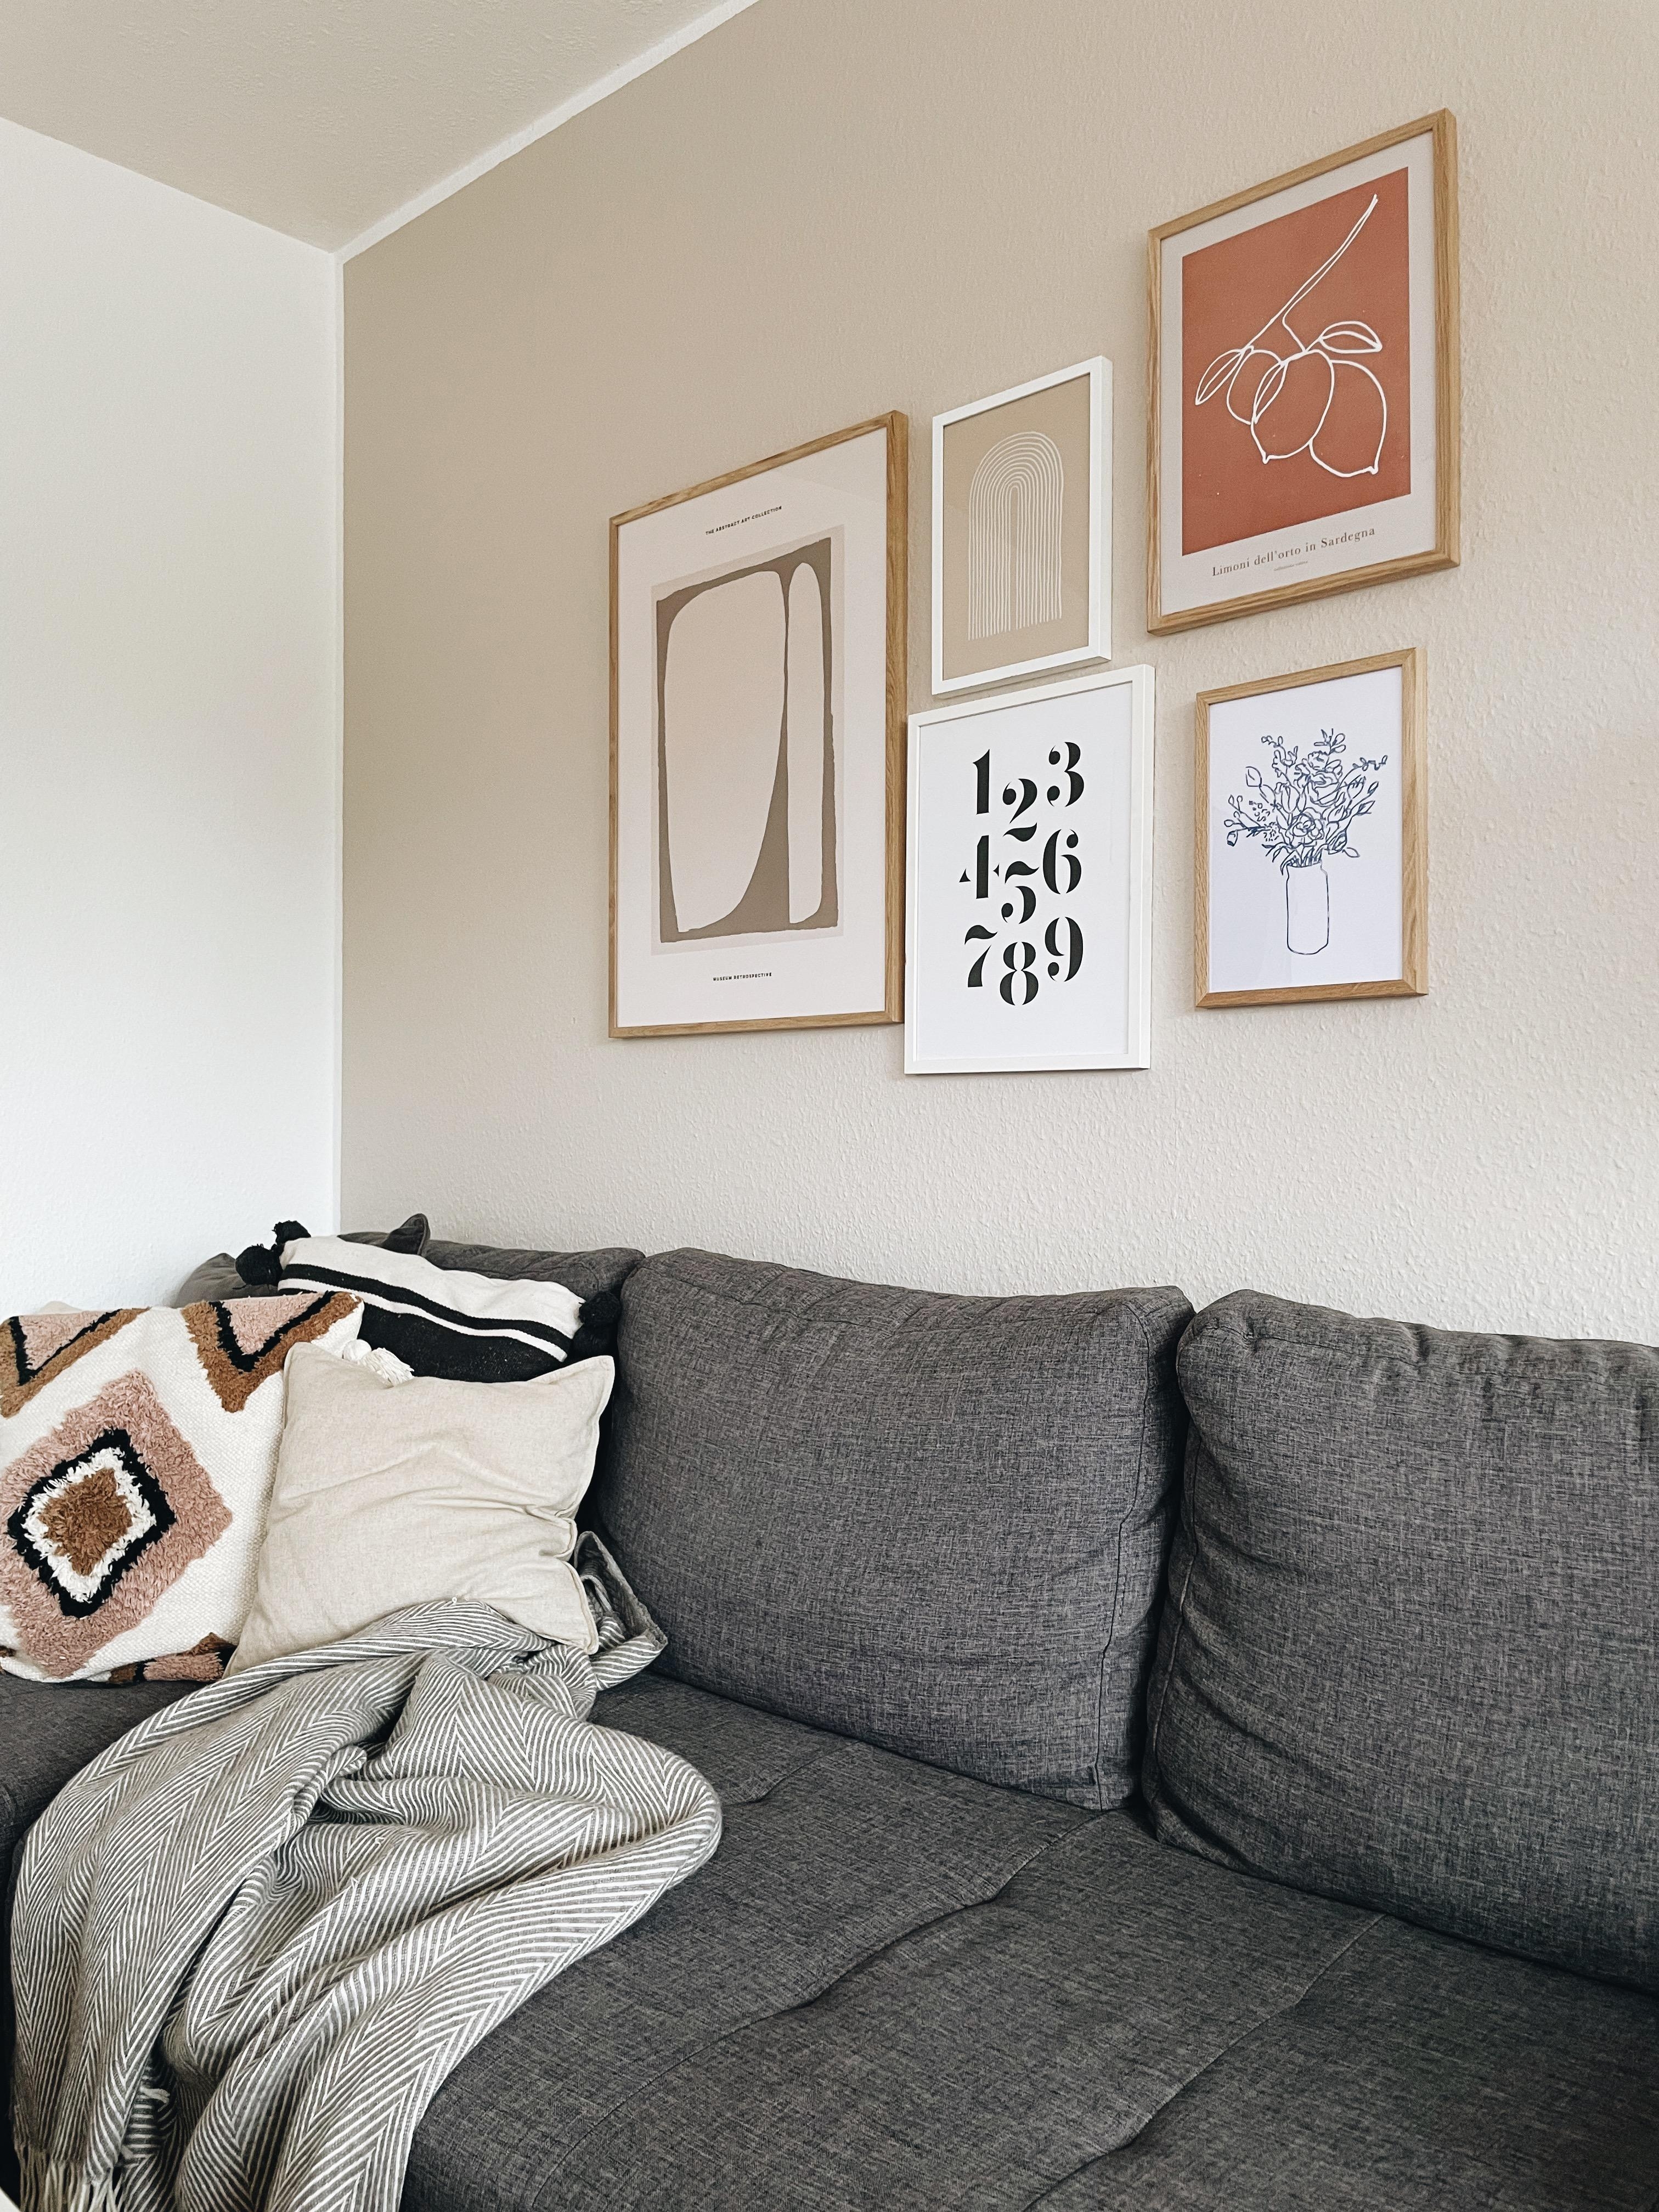 Neue Bilderwand 🖼
#bilderwand #wohnzimmer #couchstyle #couchliebt #hygge 